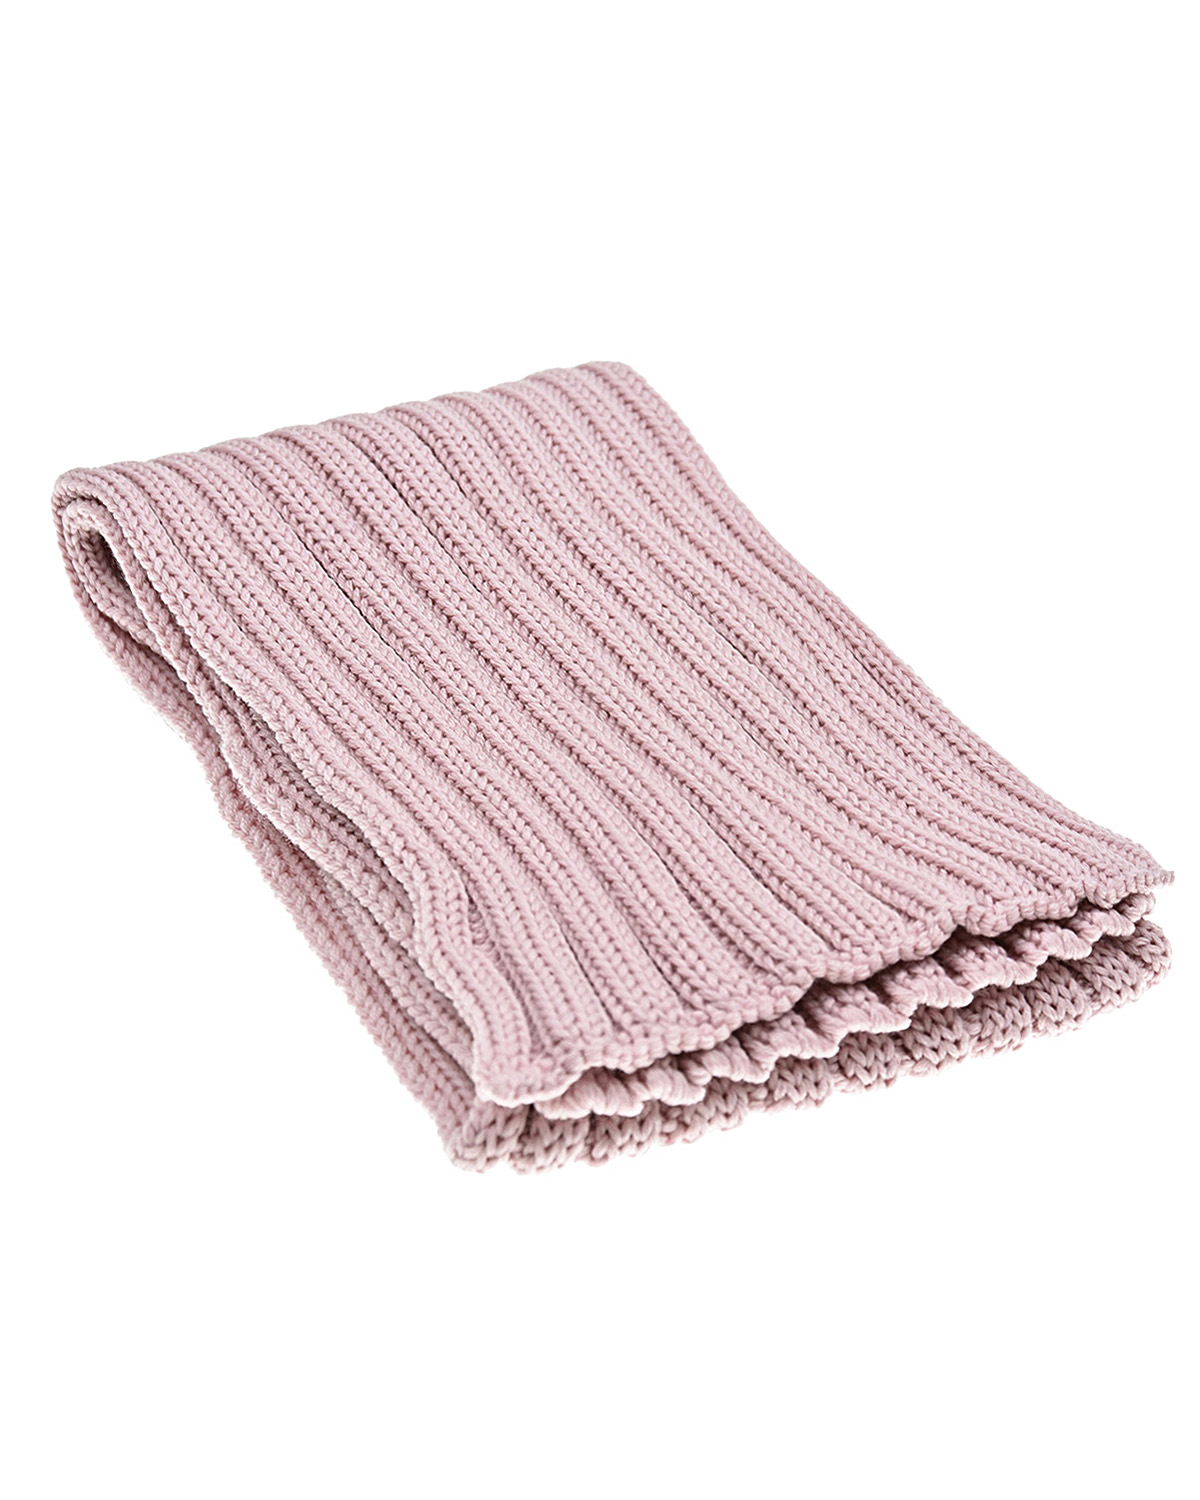 Розовый шерстяной шарф Catya детский, размер unica